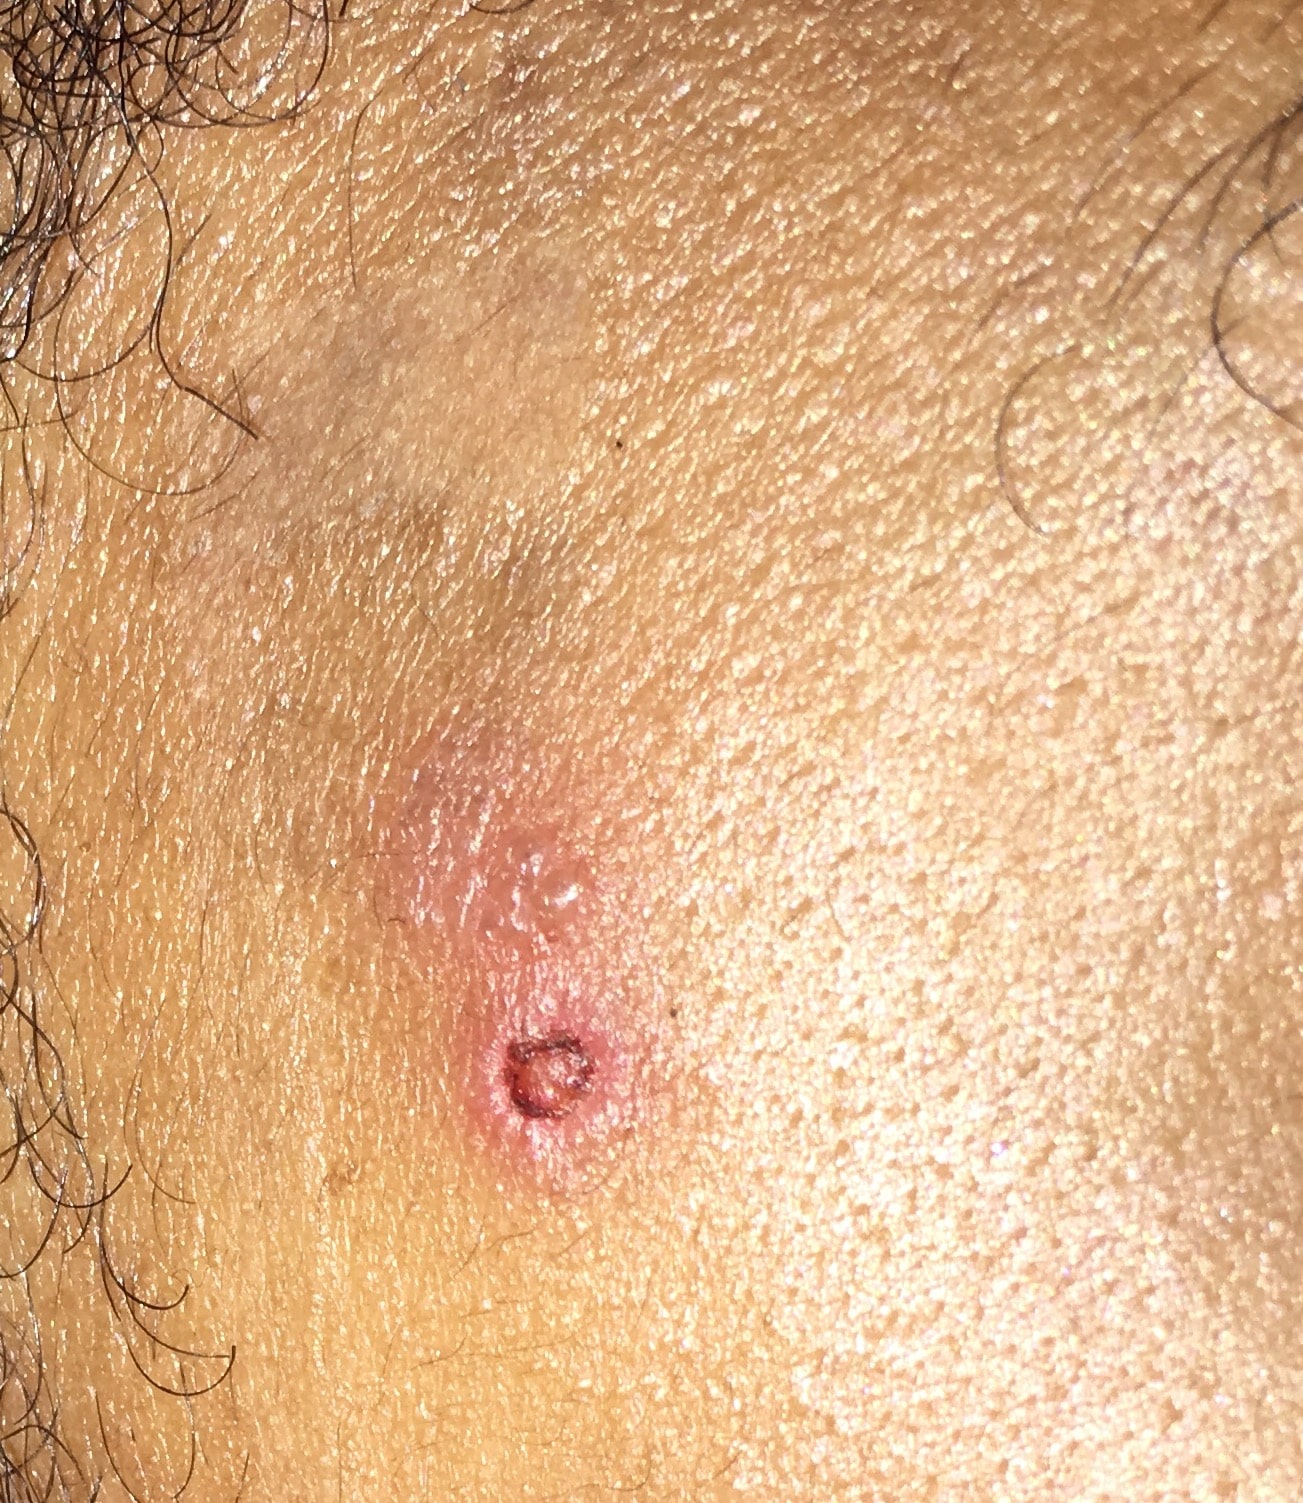 Weird rash/bump/ulcer on face